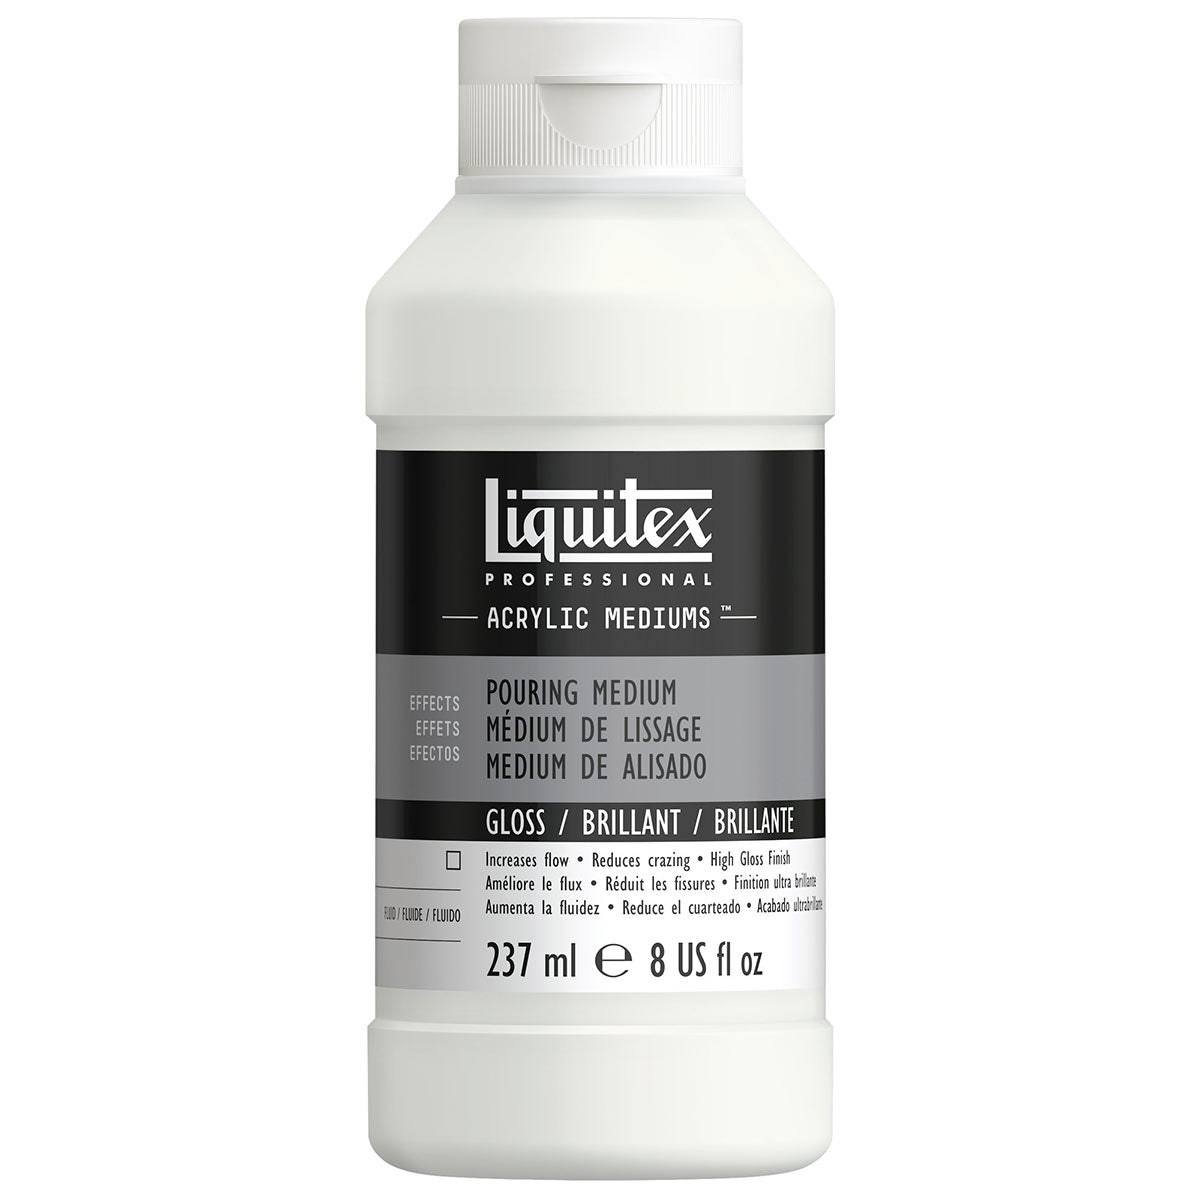 Liquitex - Gießen mittelgroßen Glanz 237 ml